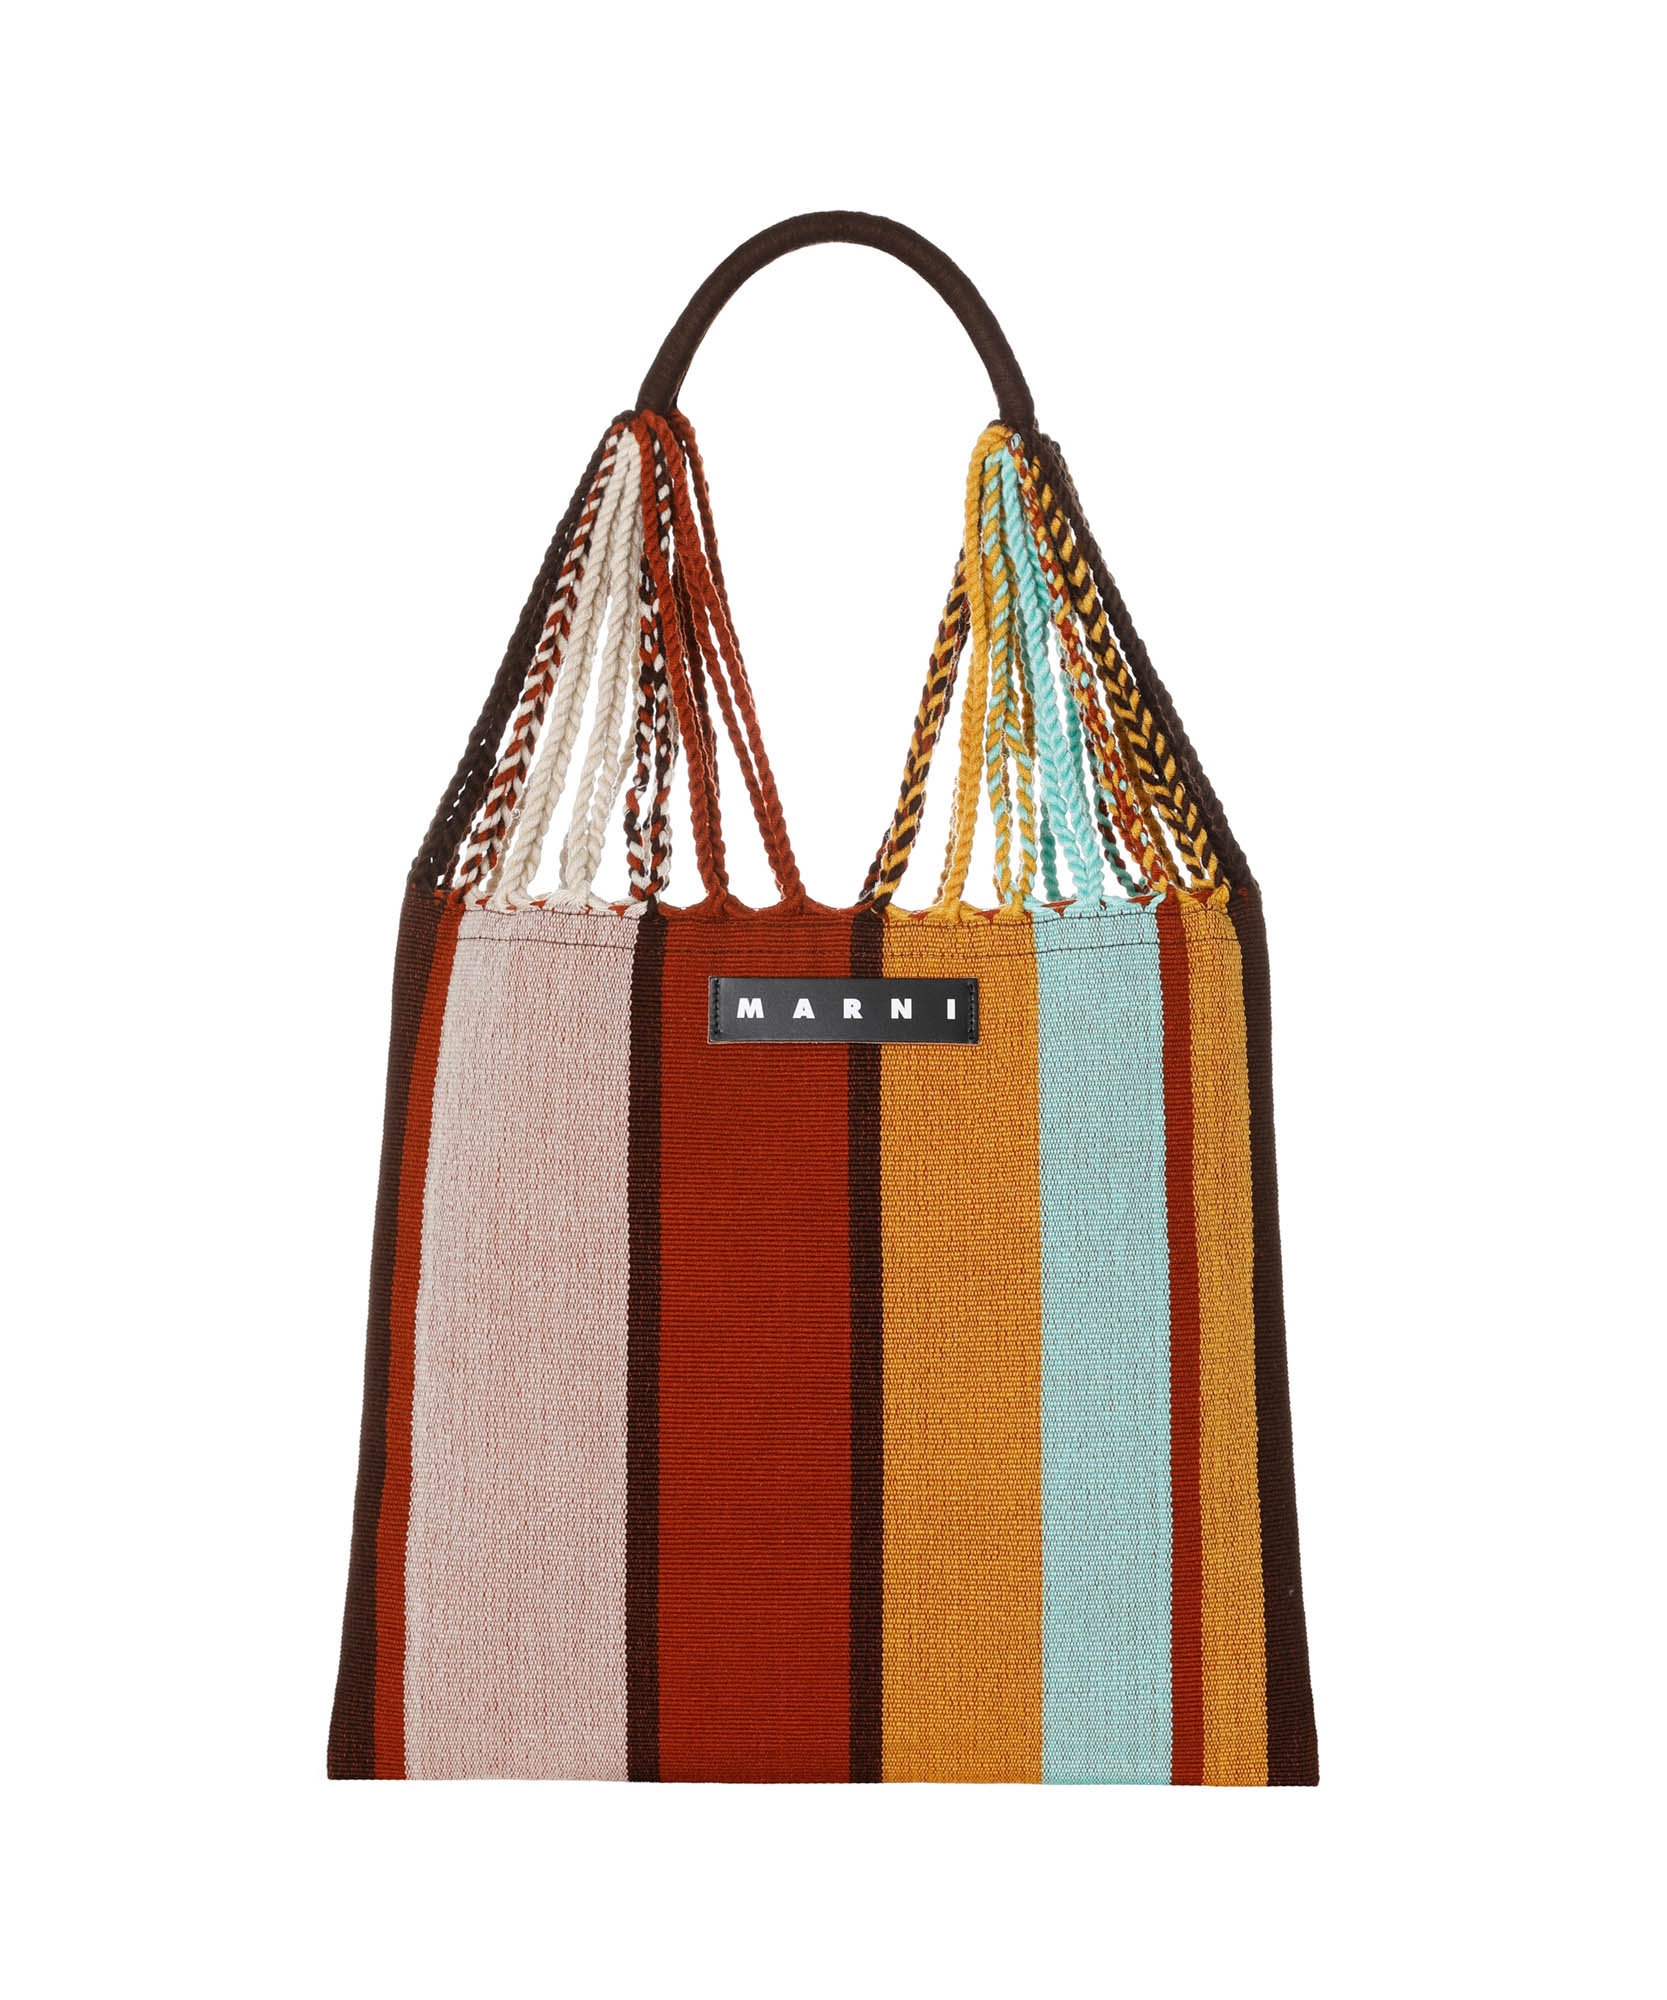 マルニ」のハンモックバッグに新色、阪急百貨店公式オンラインストアで発売